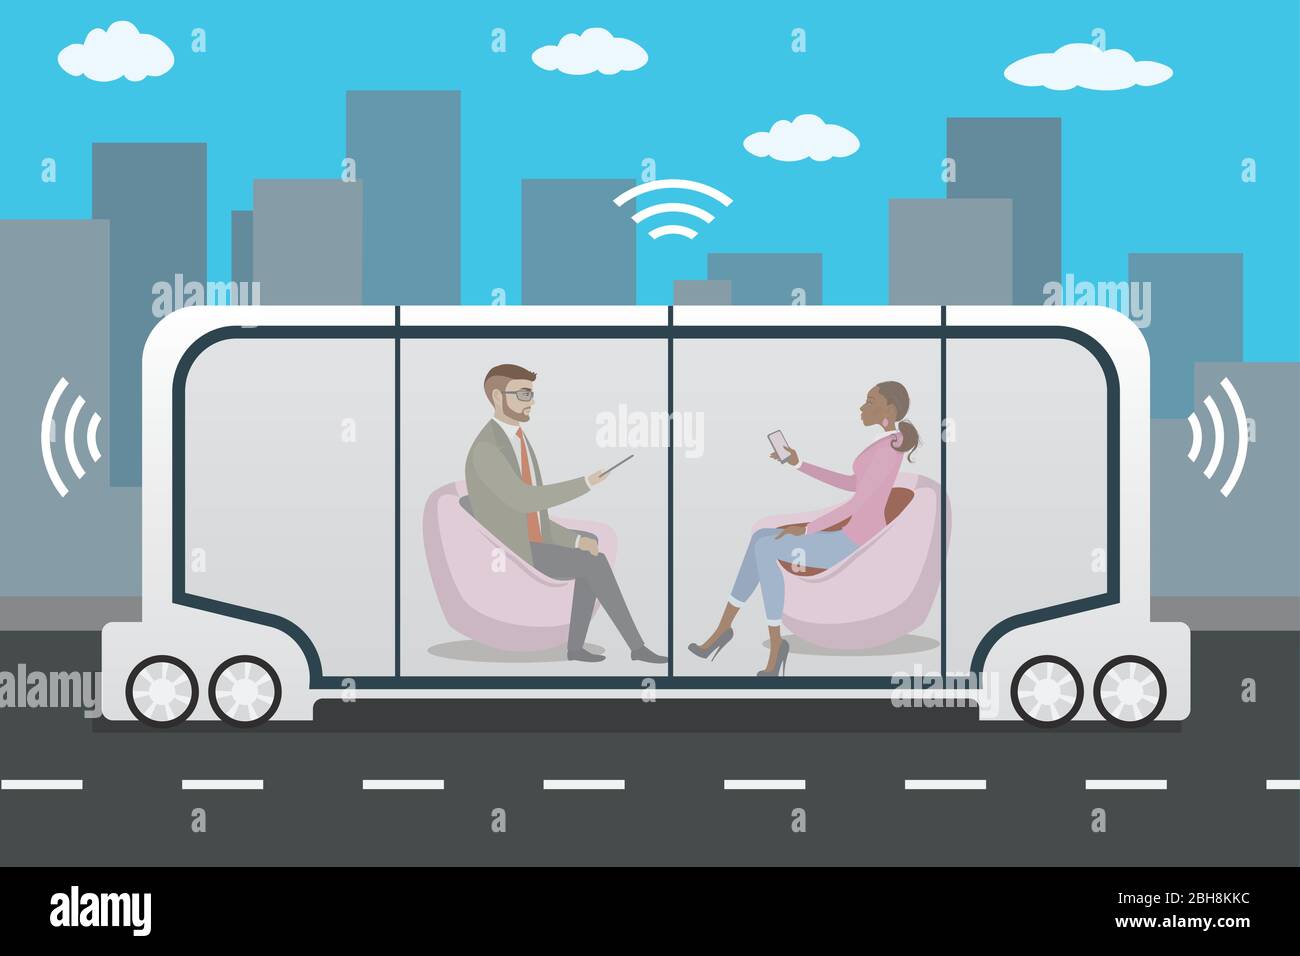 coche autónomo o autobús e internet de las cosas concepto iot auto-conductor, futurista transporte urbano con pasajeros, ilustración vectorial Ilustración del Vector